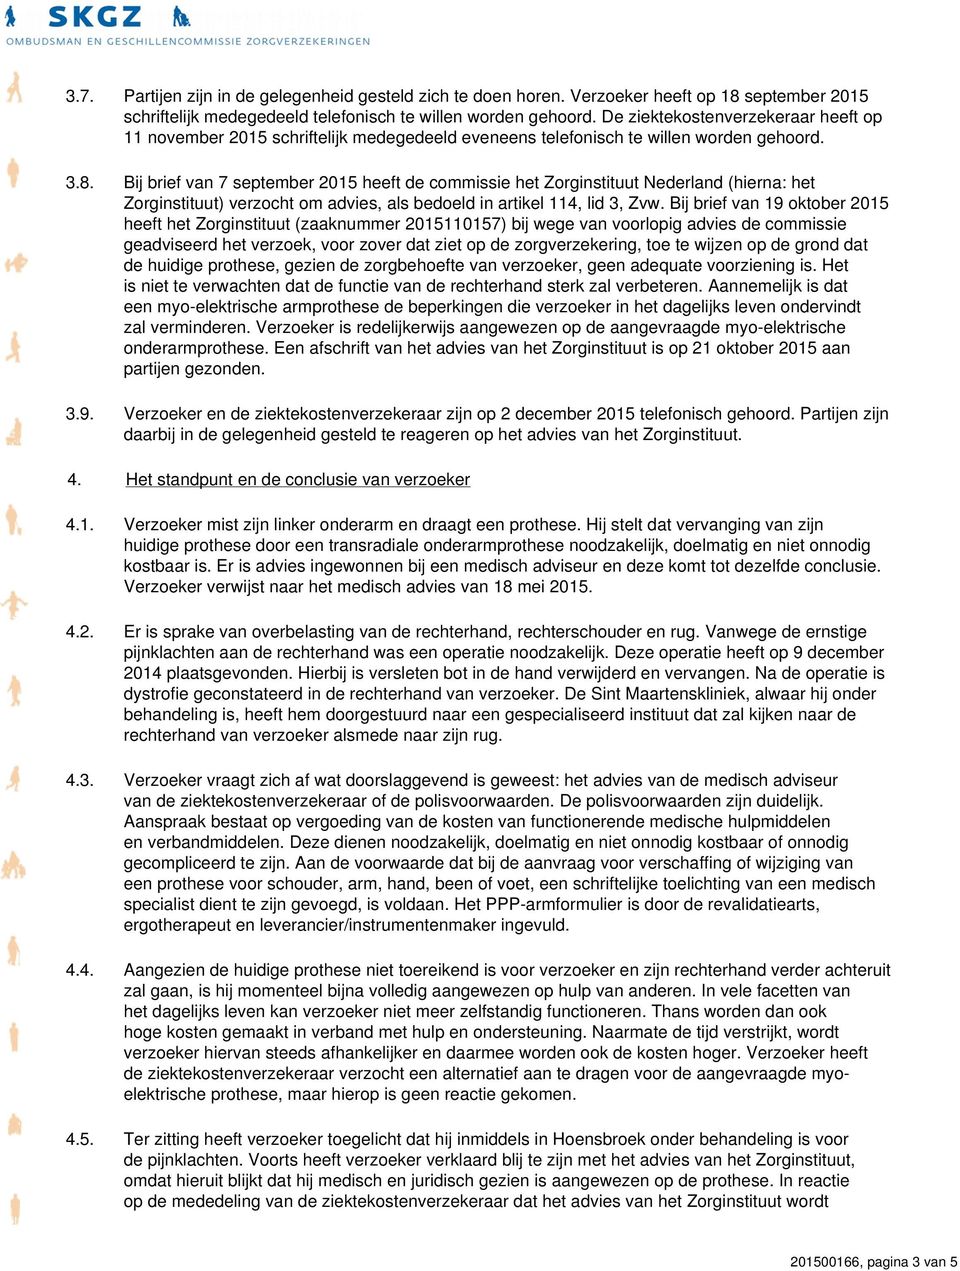 Bij brief van 7 september 2015 heeft de commissie het Zorginstituut Nederland (hierna: het Zorginstituut) verzocht om advies, als bedoeld in artikel 114, lid 3, Zvw.